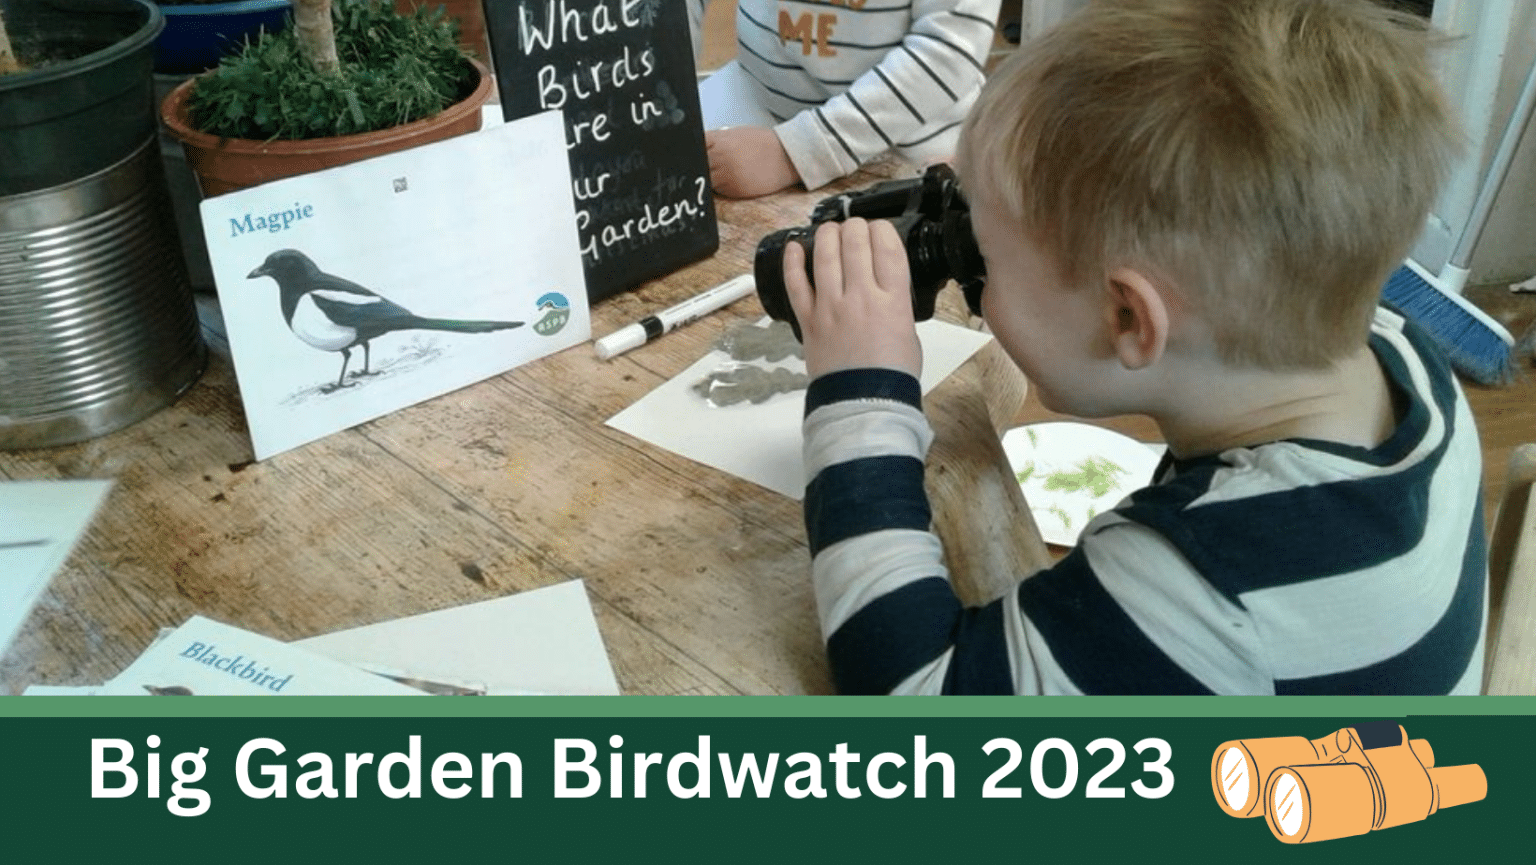 The Big Garden Bird Watch